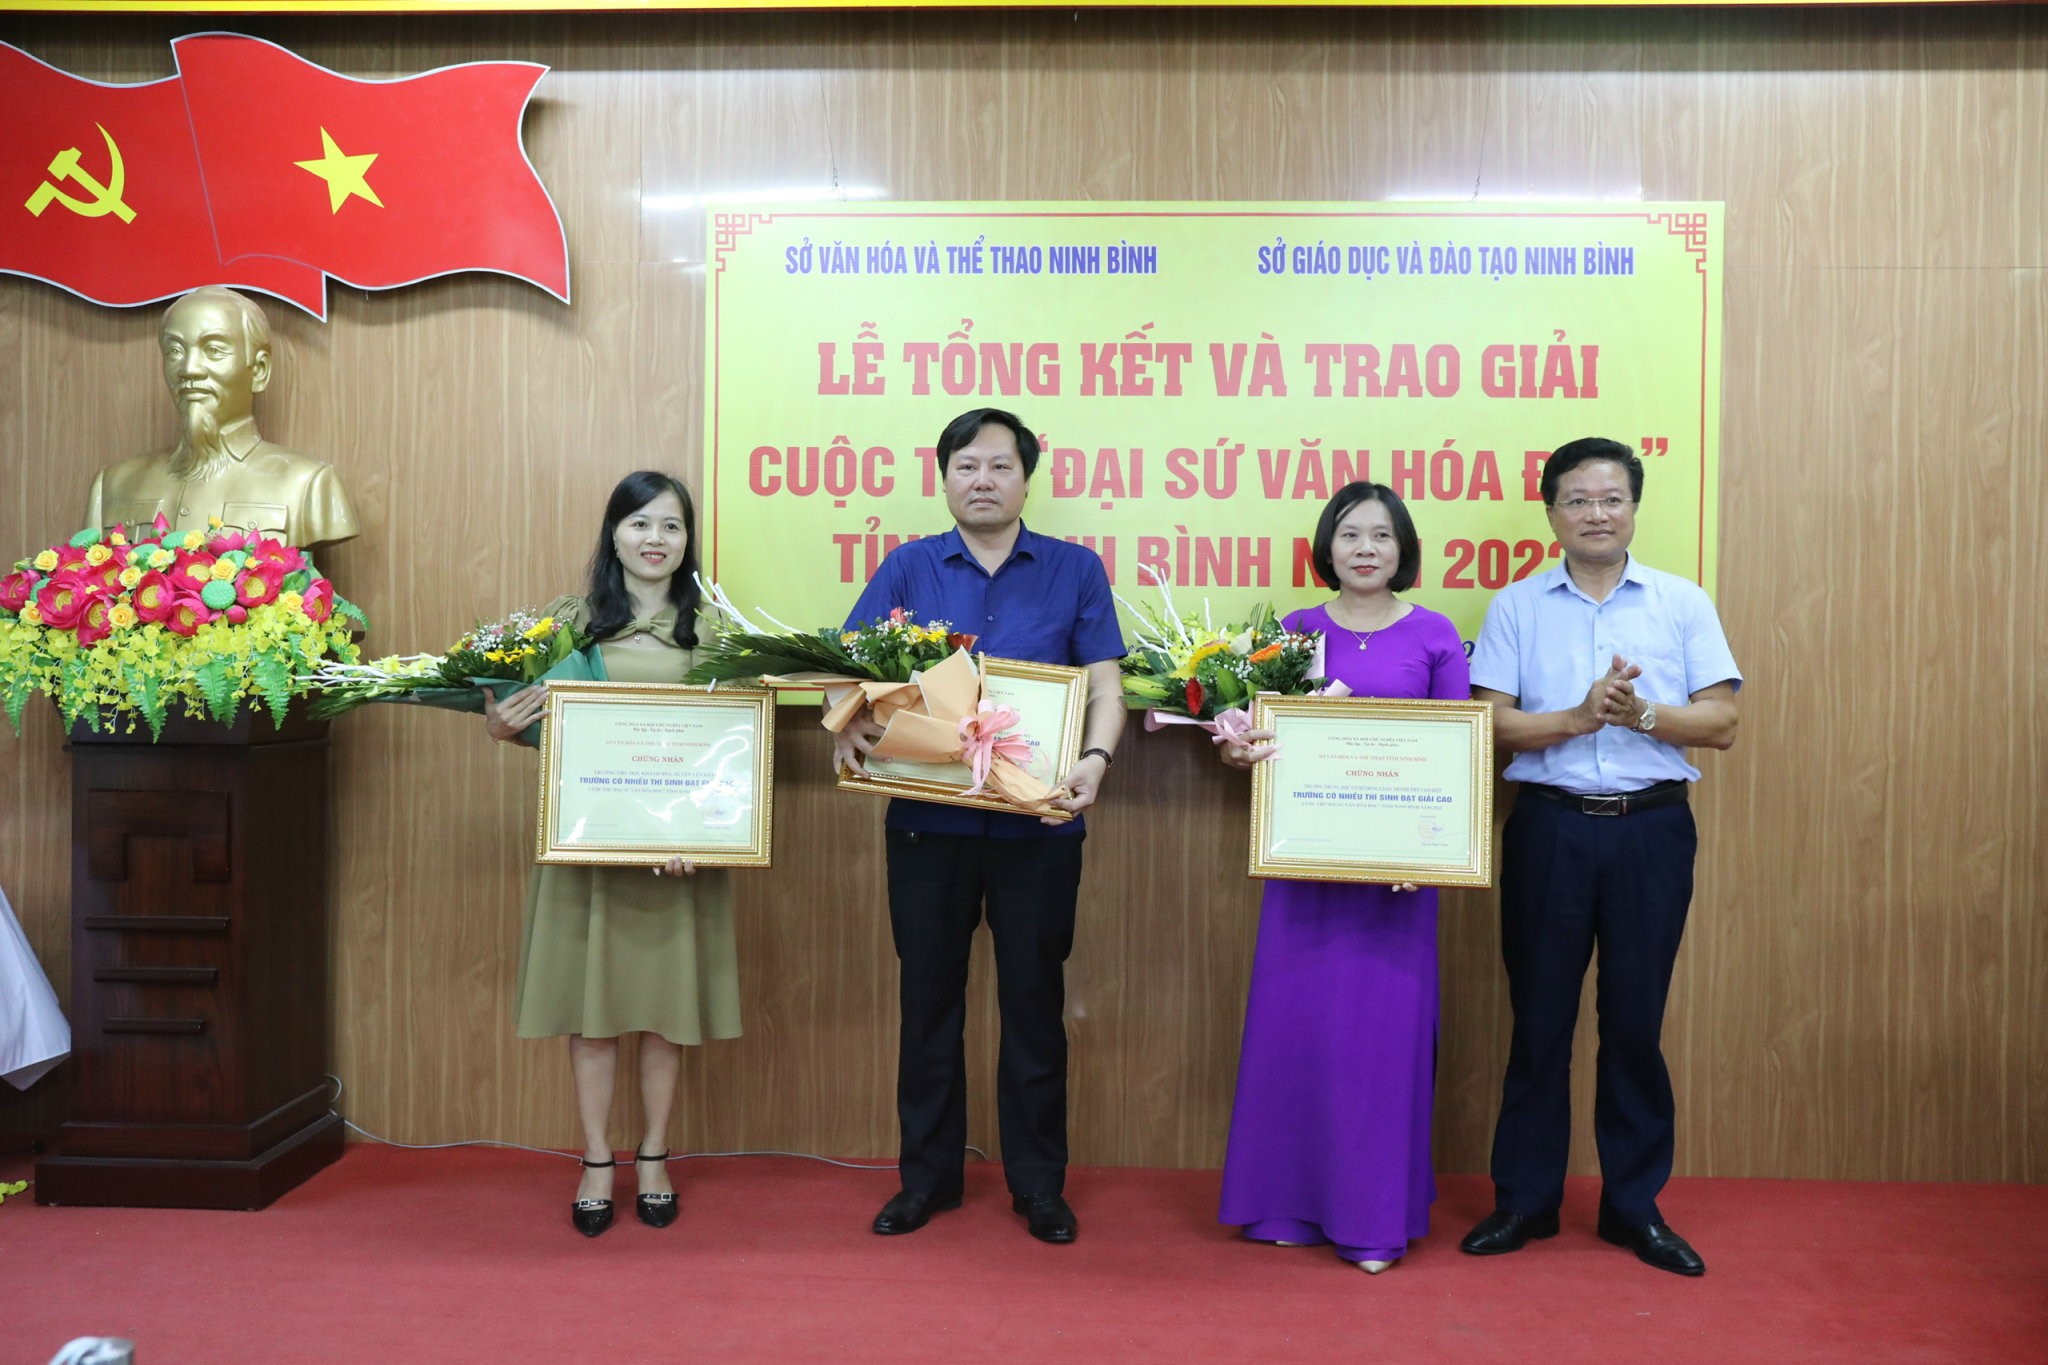 Tổng kết và trao giải Cuộc thi “Đại sứ văn hóa đọc” tỉnh Ninh Bình năm 2022